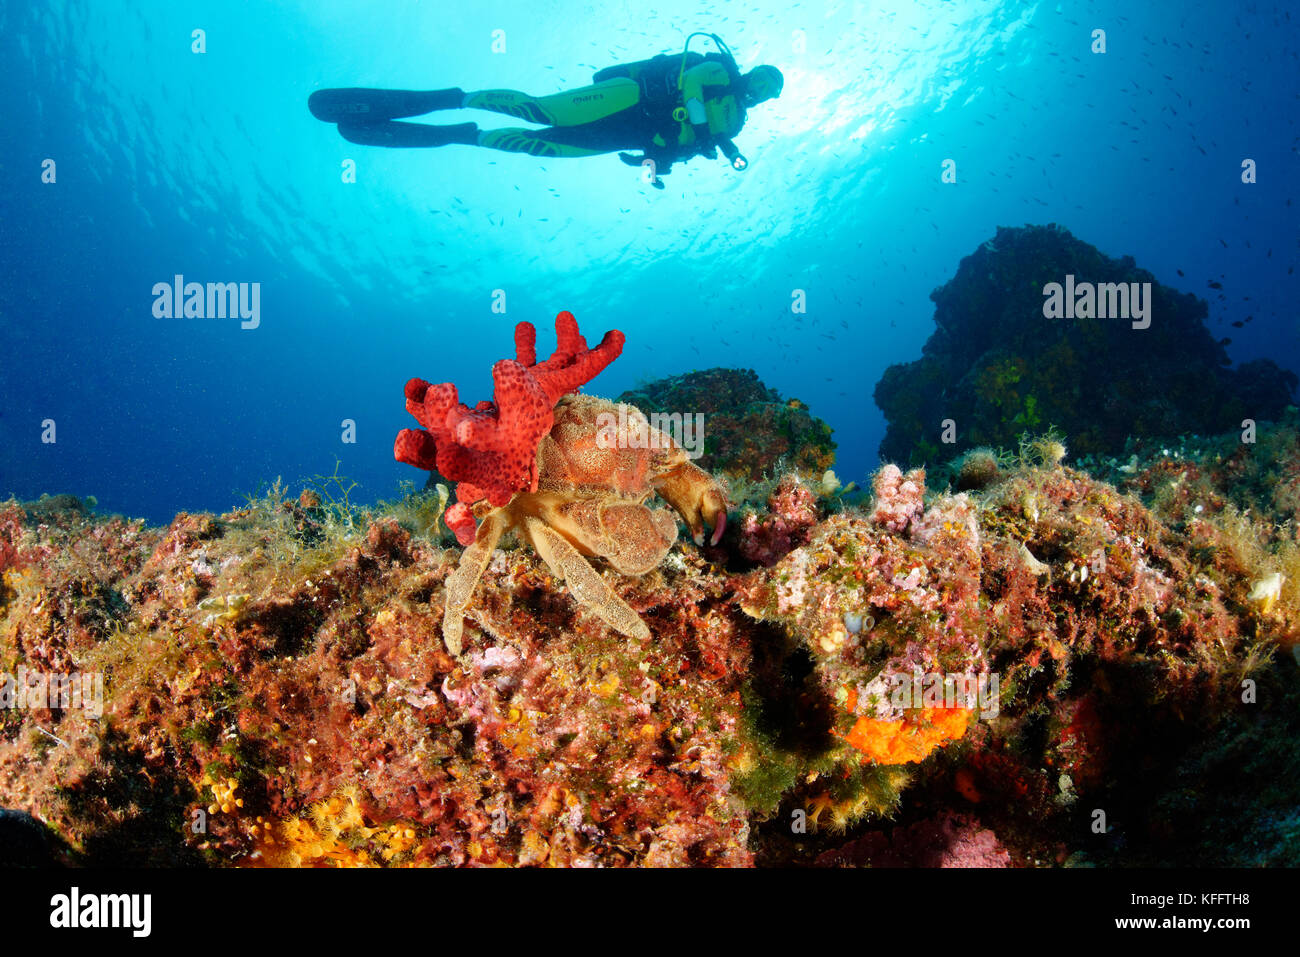 Sleepy crabe, dromia personata et alcyonium palmatum ( symbiosys ) et de plongée sous marine, mer Adriatique, mer méditerranée, Croatie Banque D'Images